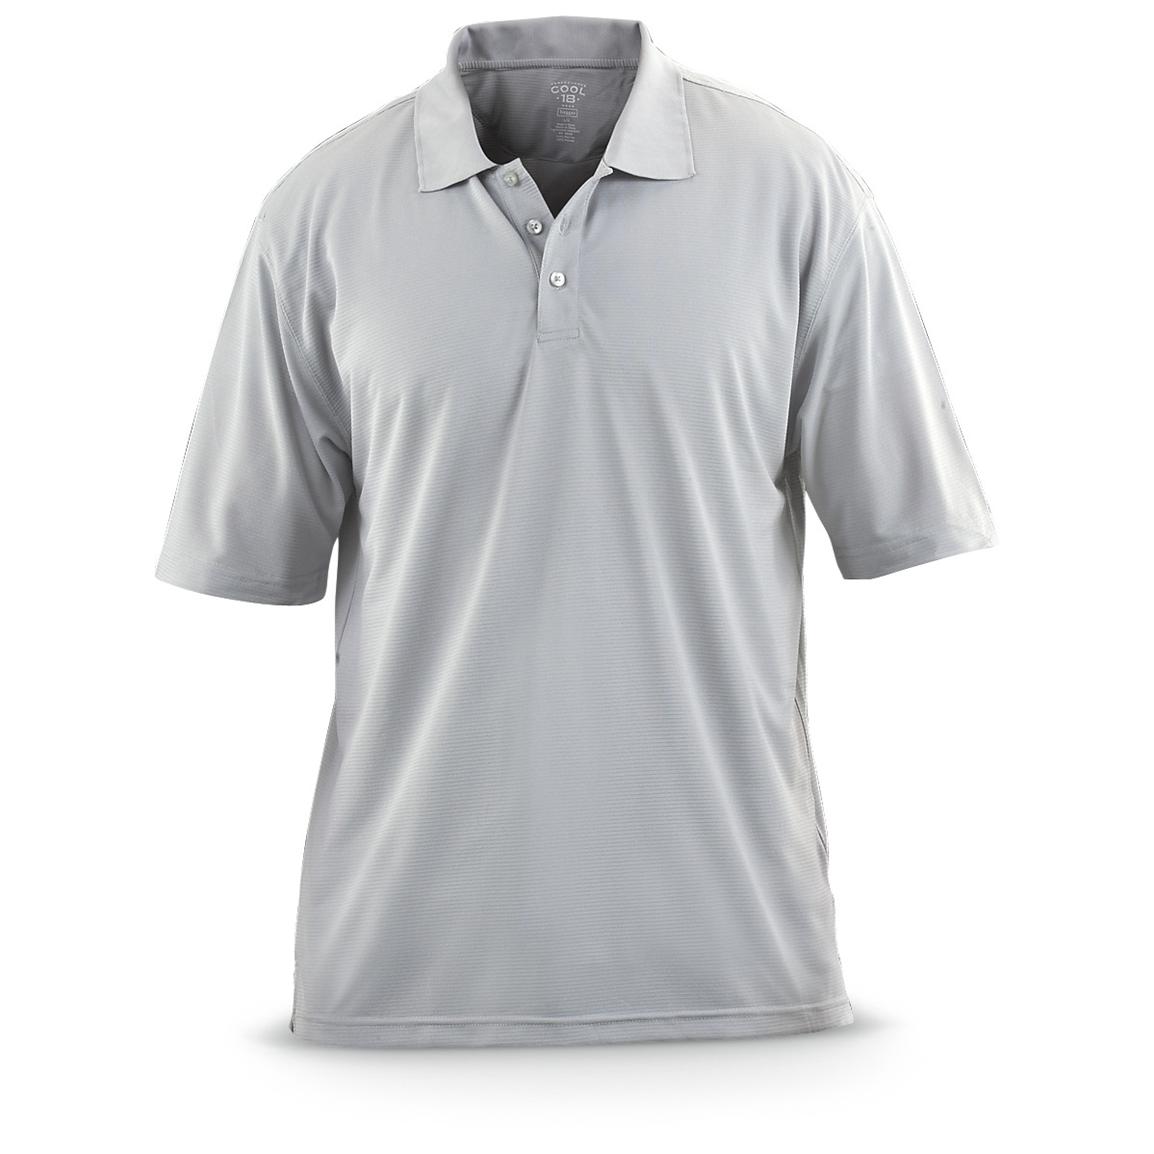 Haggar® Cool18 Polo Shirt - 206996, Shirts at Sportsman's Guide